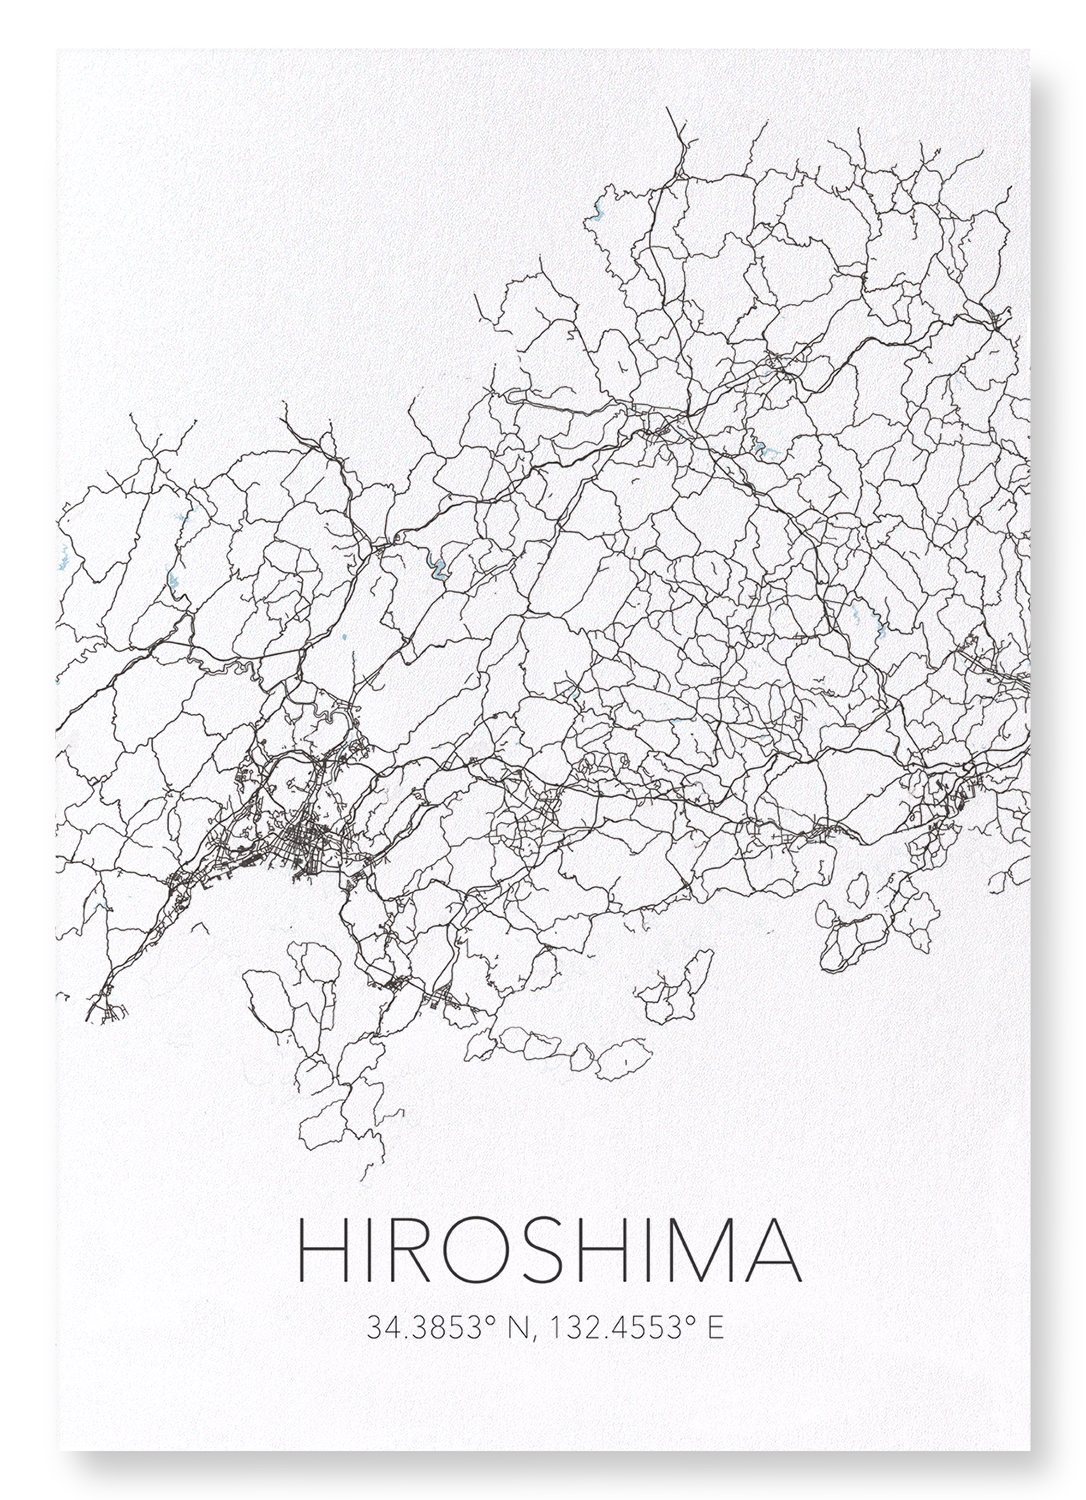 HIROSHIMA CUTOUT: Map Cutout Art Print